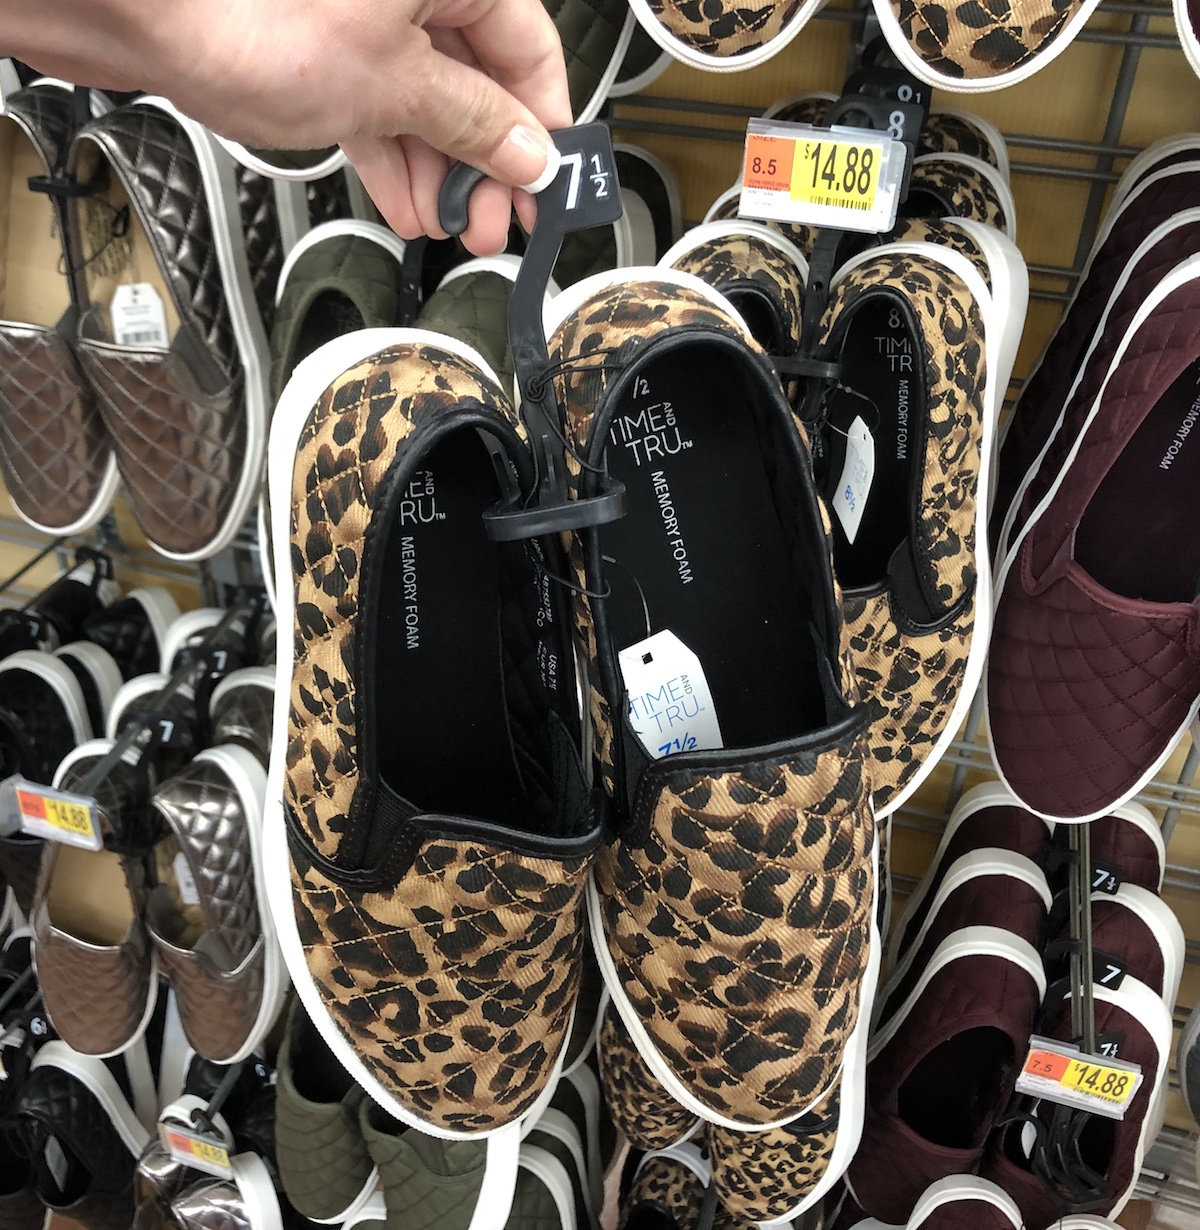 leopard slip on sneakers walmart